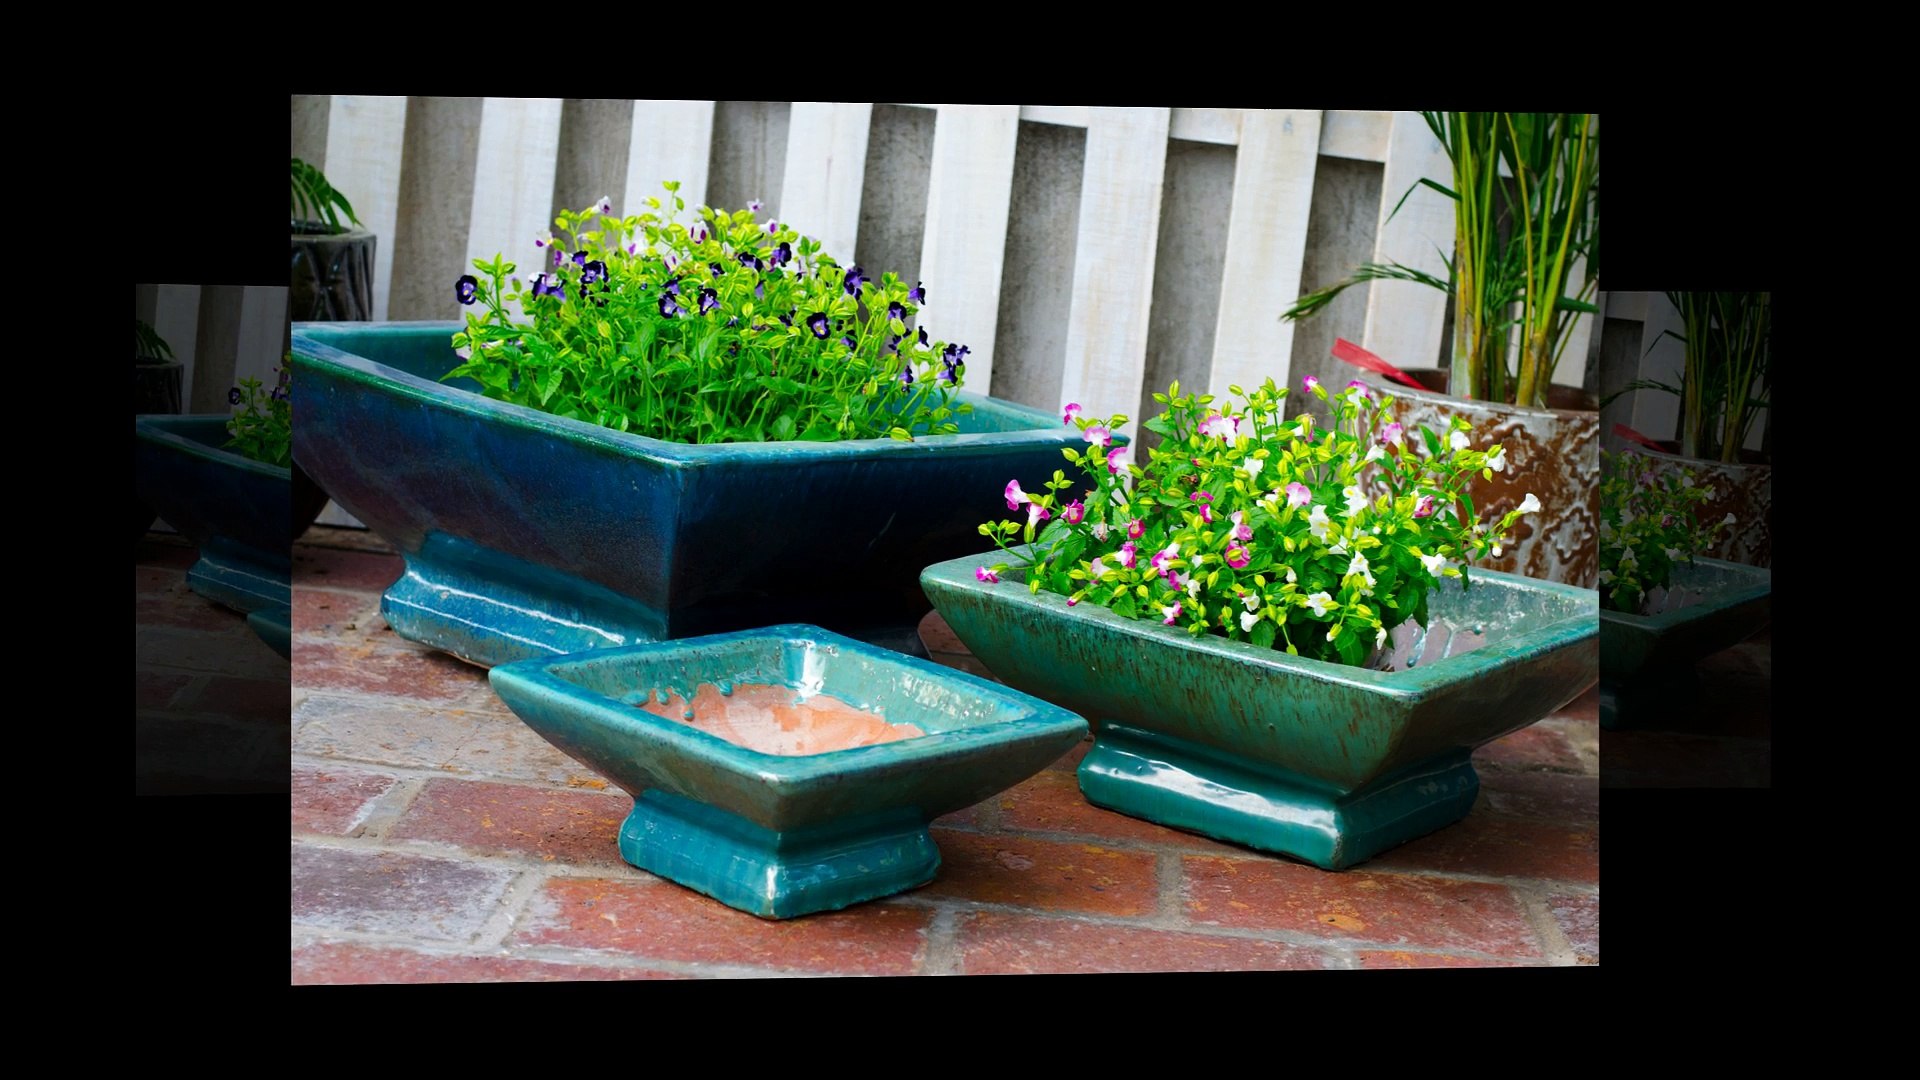 Ceramic vase Beautiful handmade garden wholesale indoor and outdoor decorative pots, flower pots Mad